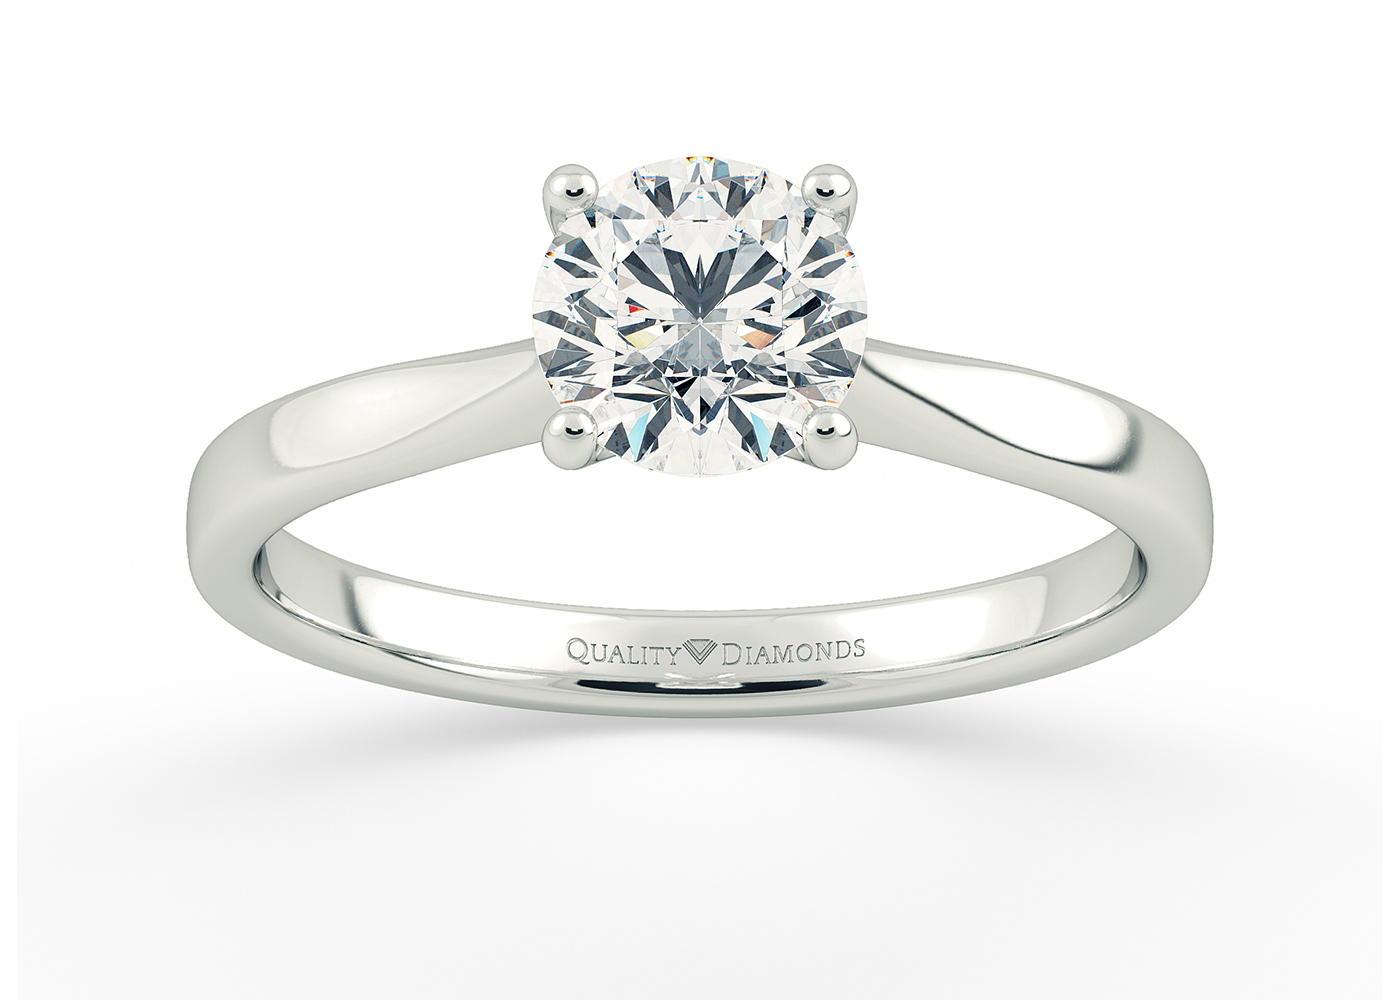 Round Brilliant Beau Diamond Ring in Platinum